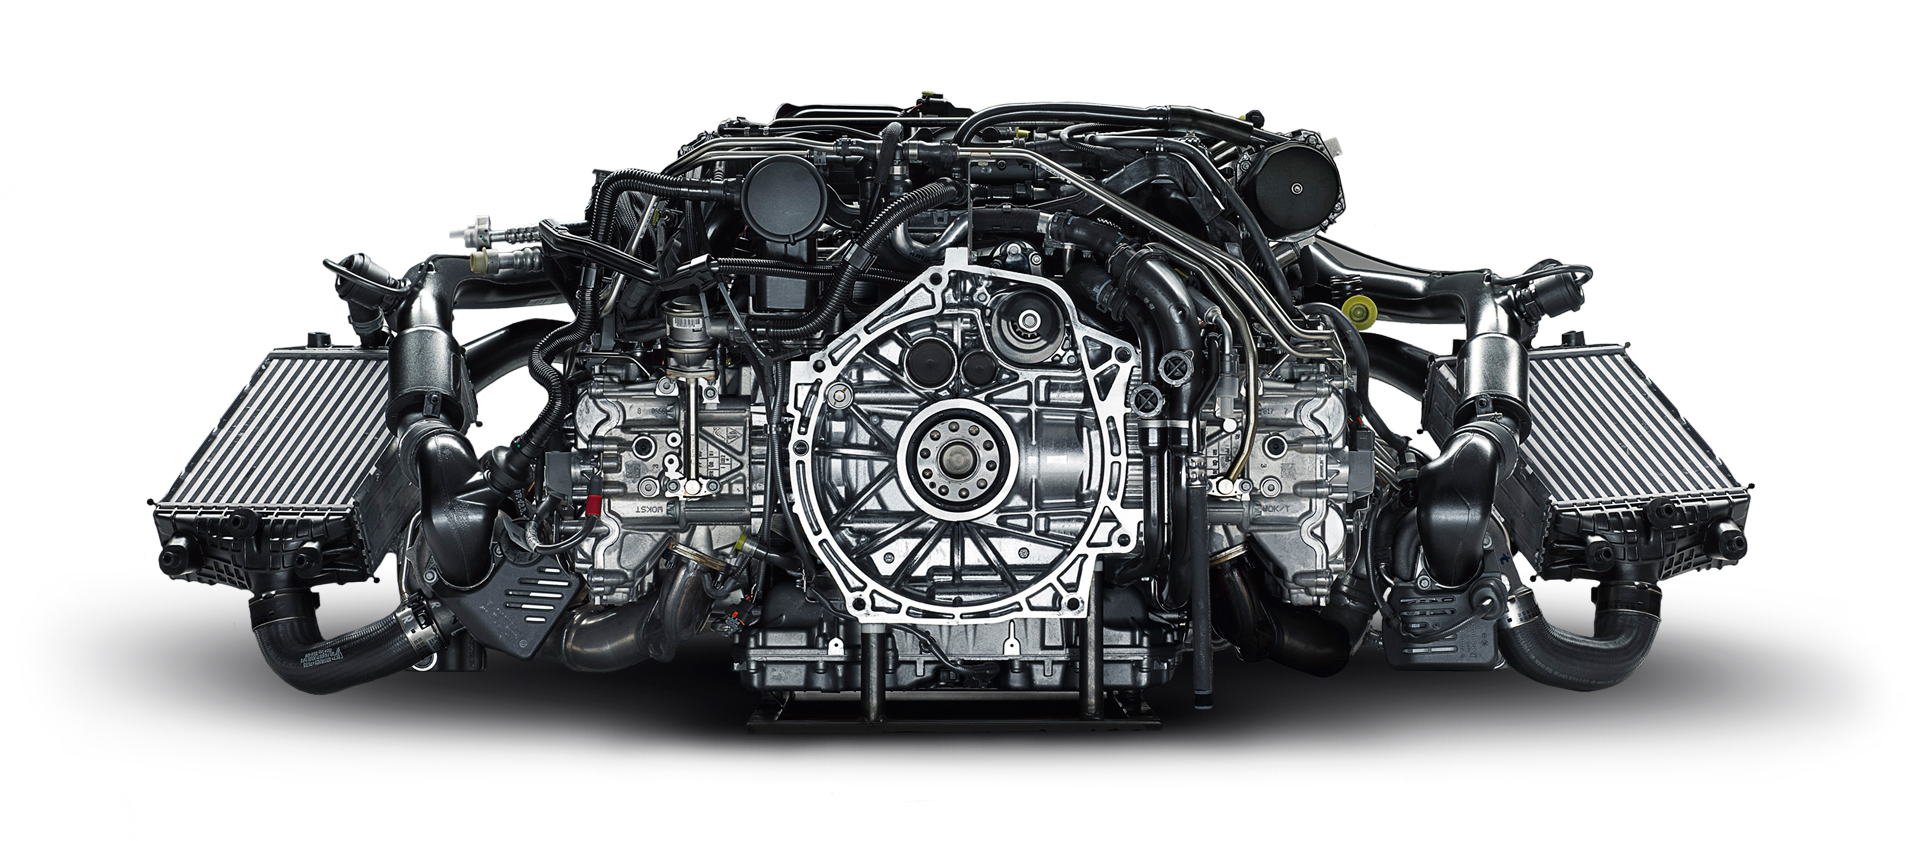 Обман законов физики и плата за совершенство: тест обновленного Porsche 911 Turbo S. Фото 8